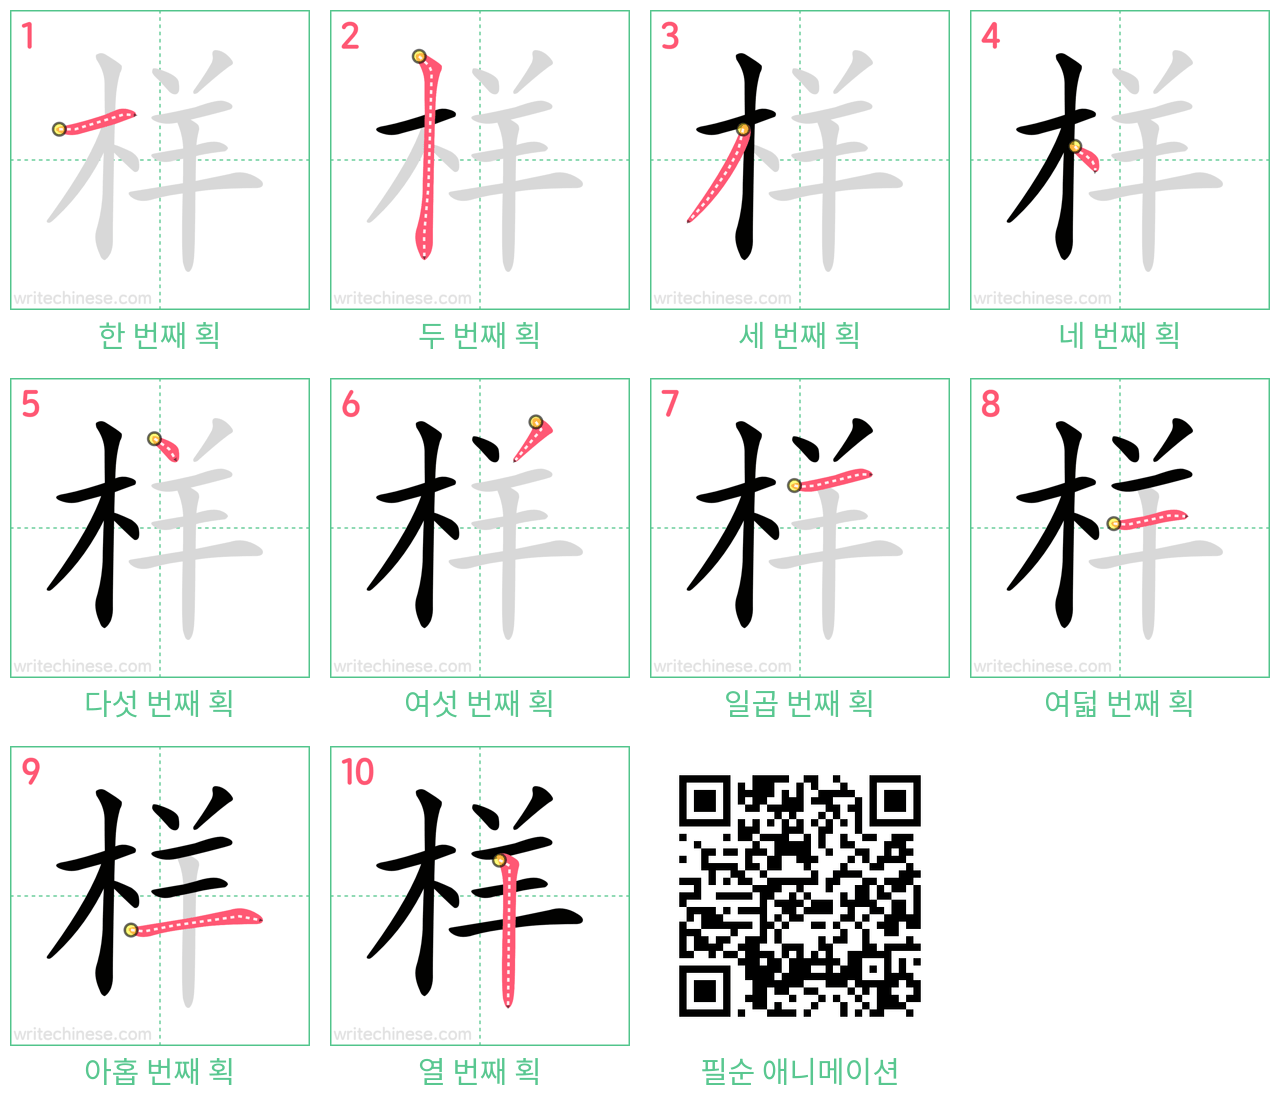 样 step-by-step stroke order diagrams